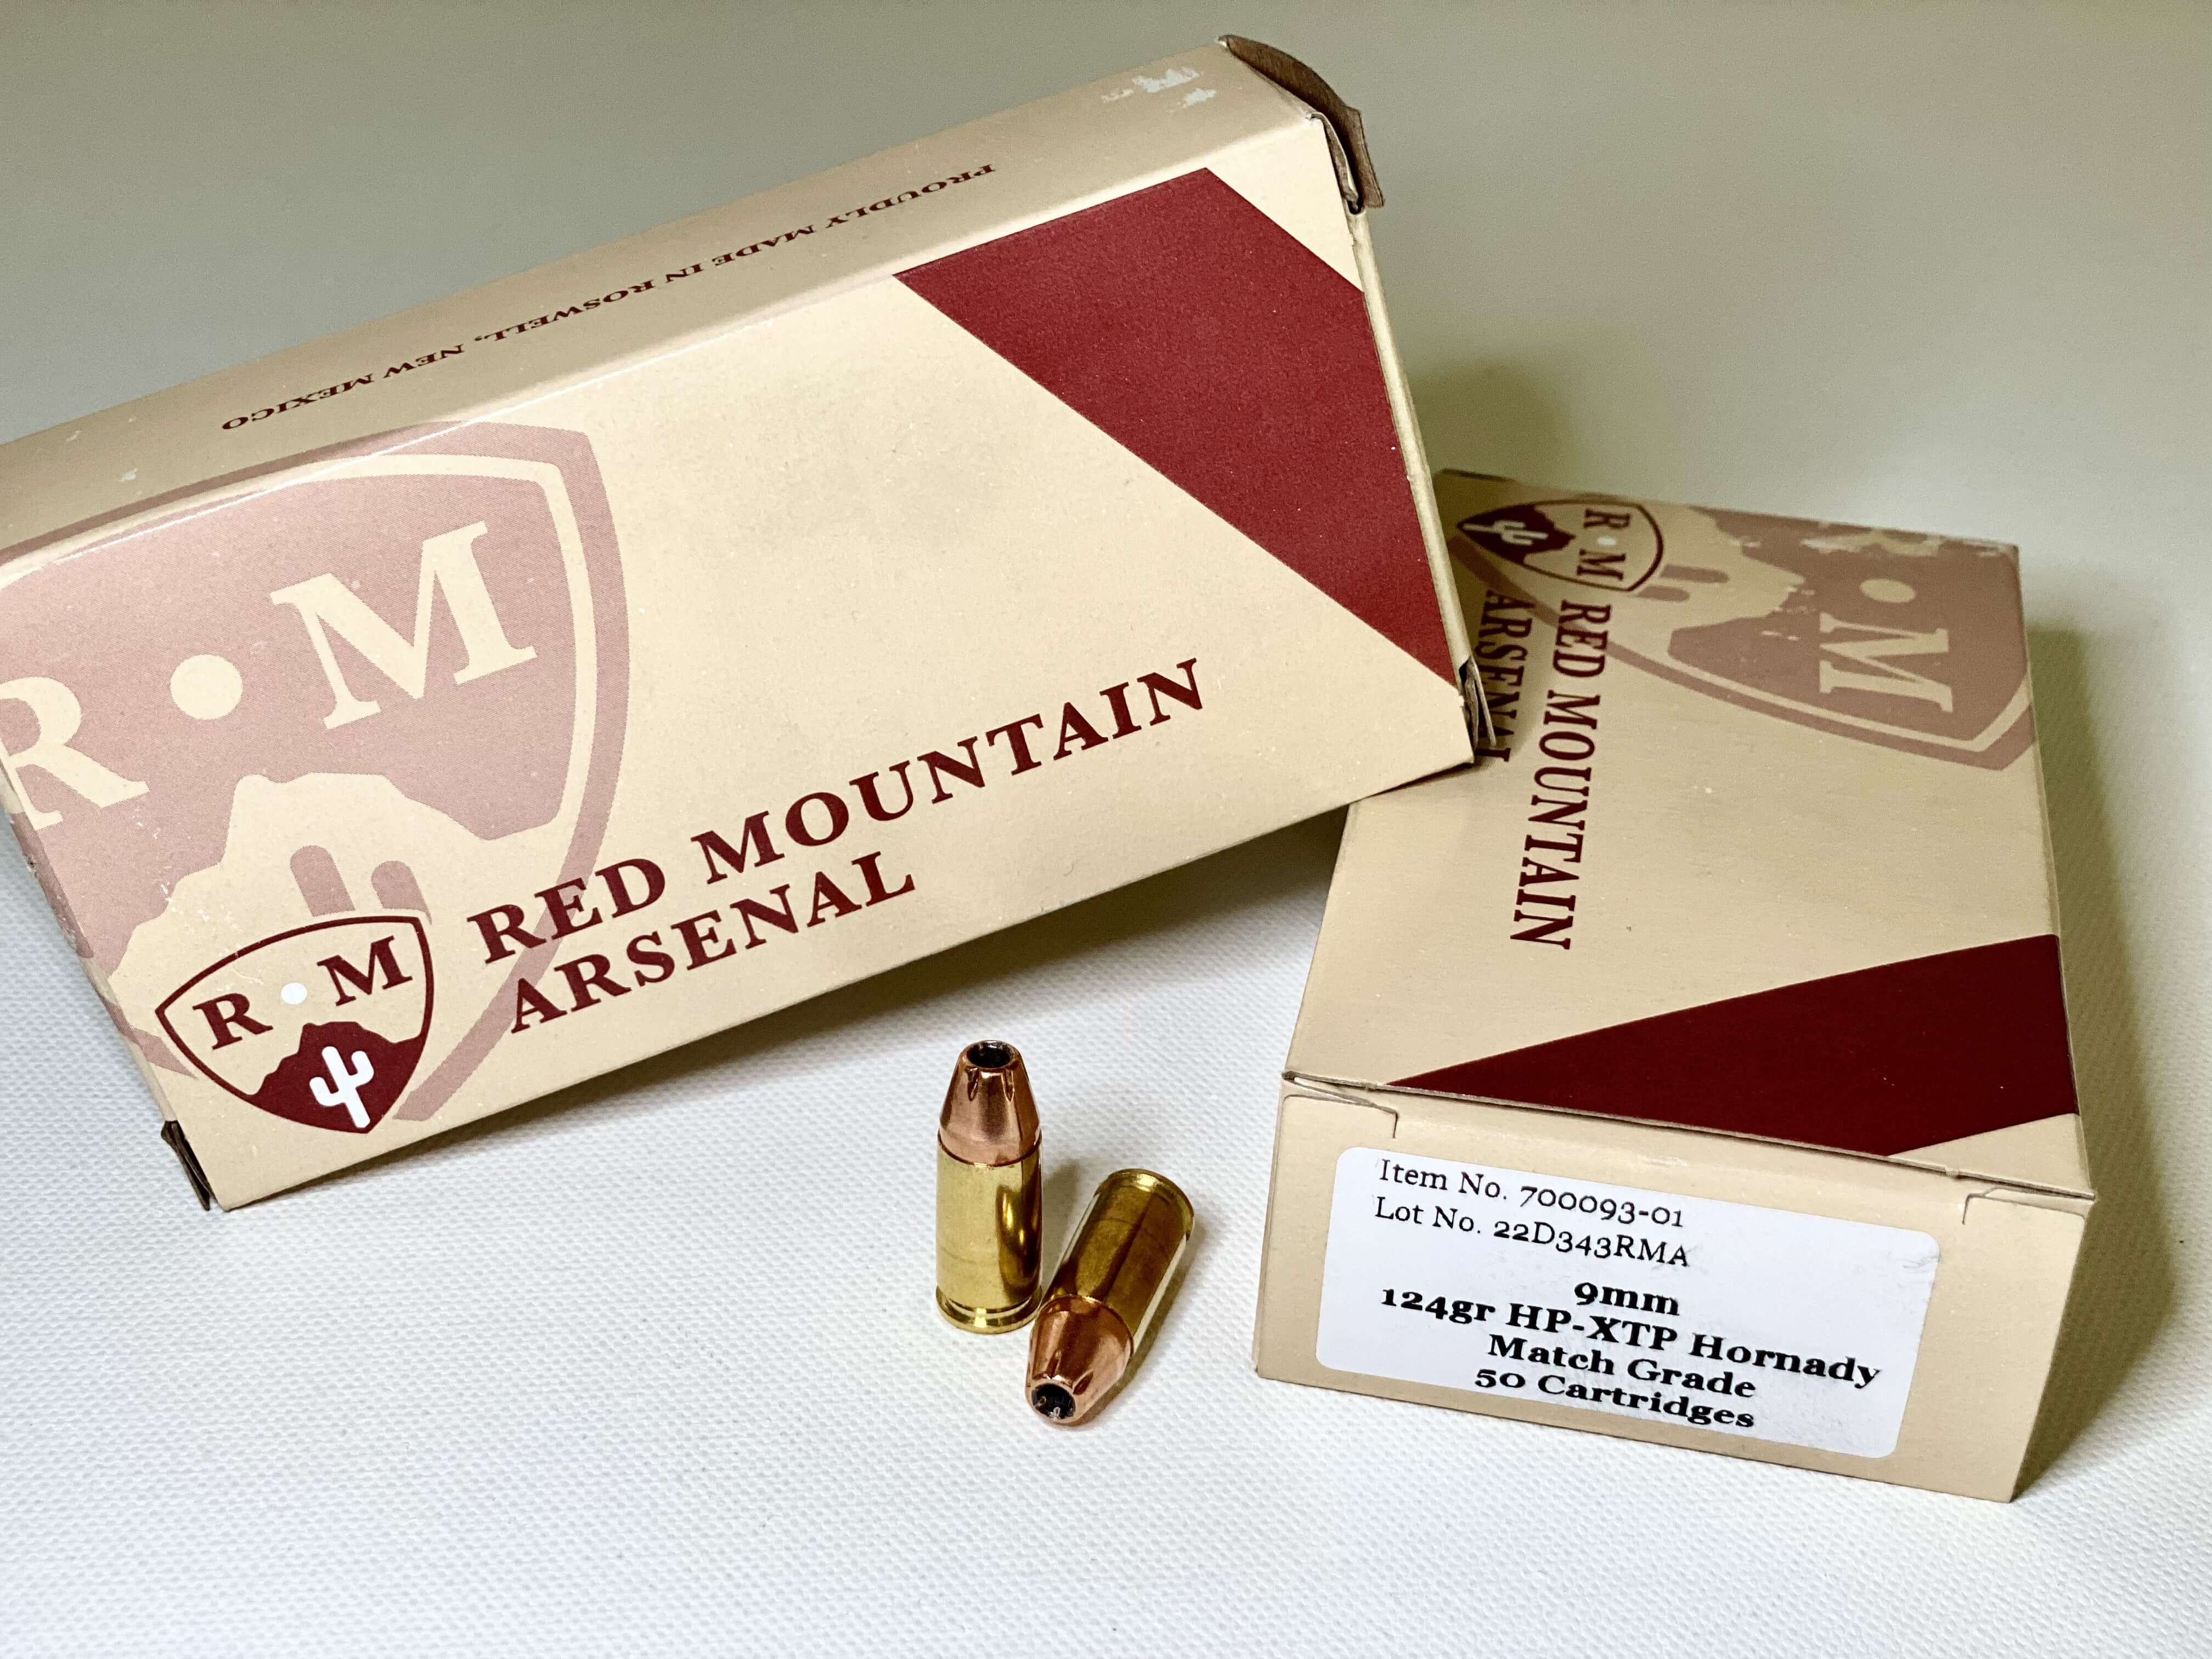 9mm Cartridge 124gr HP-XTP Match Grade by Hornady Box of 50